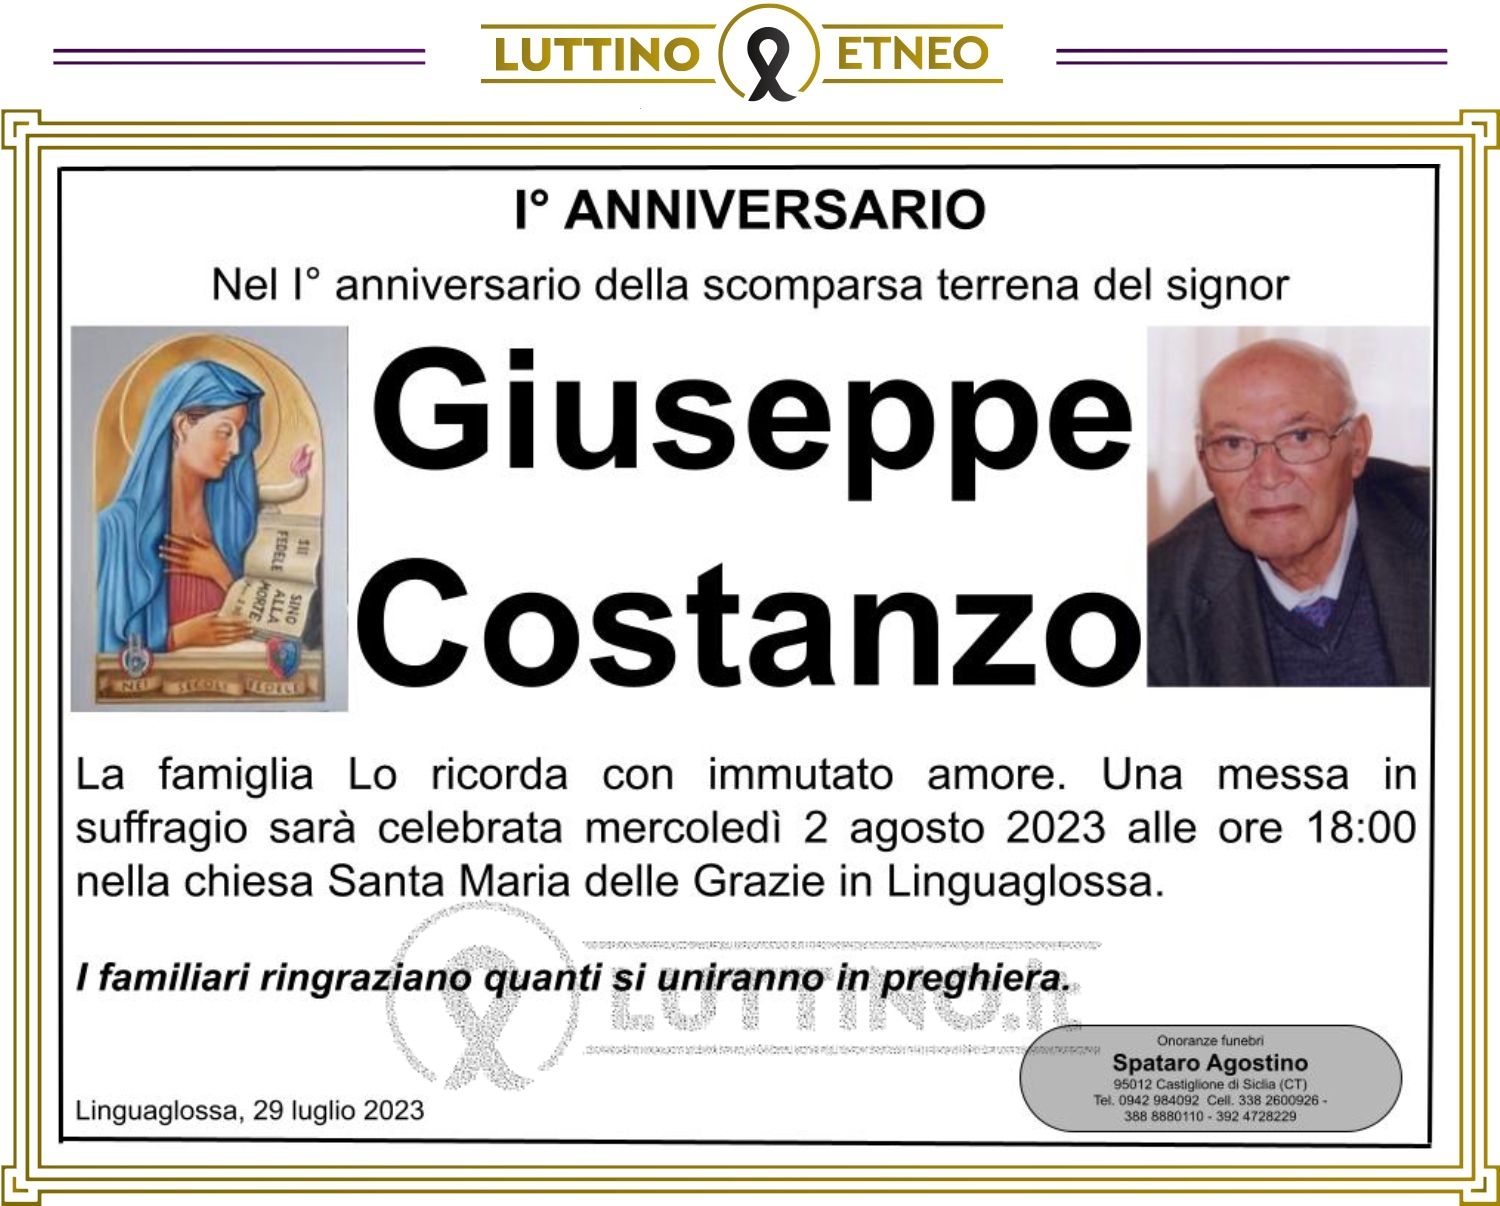 Giuseppe Costanzo 